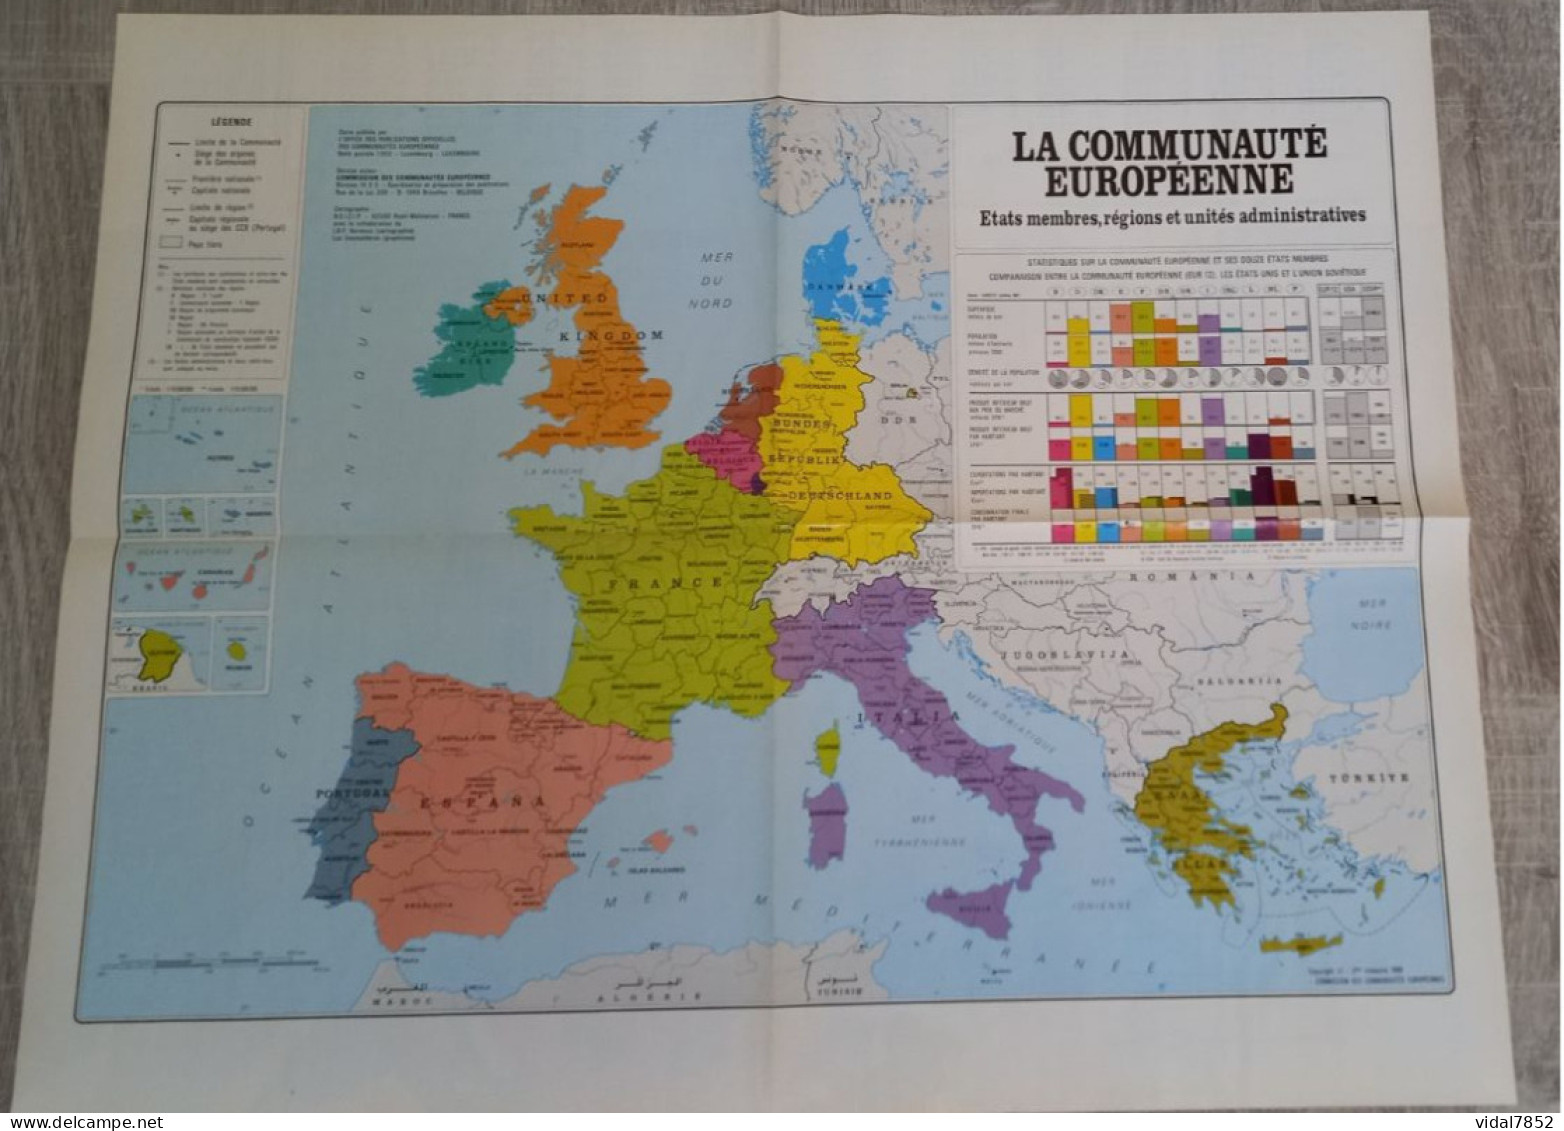 Calendrier-Almanach Des P.T.T 1990-Poster Intérieur Communauté Europèenne-Parc Axtérix Département AIN-01-Référence 421 - Formato Grande : 1981-90